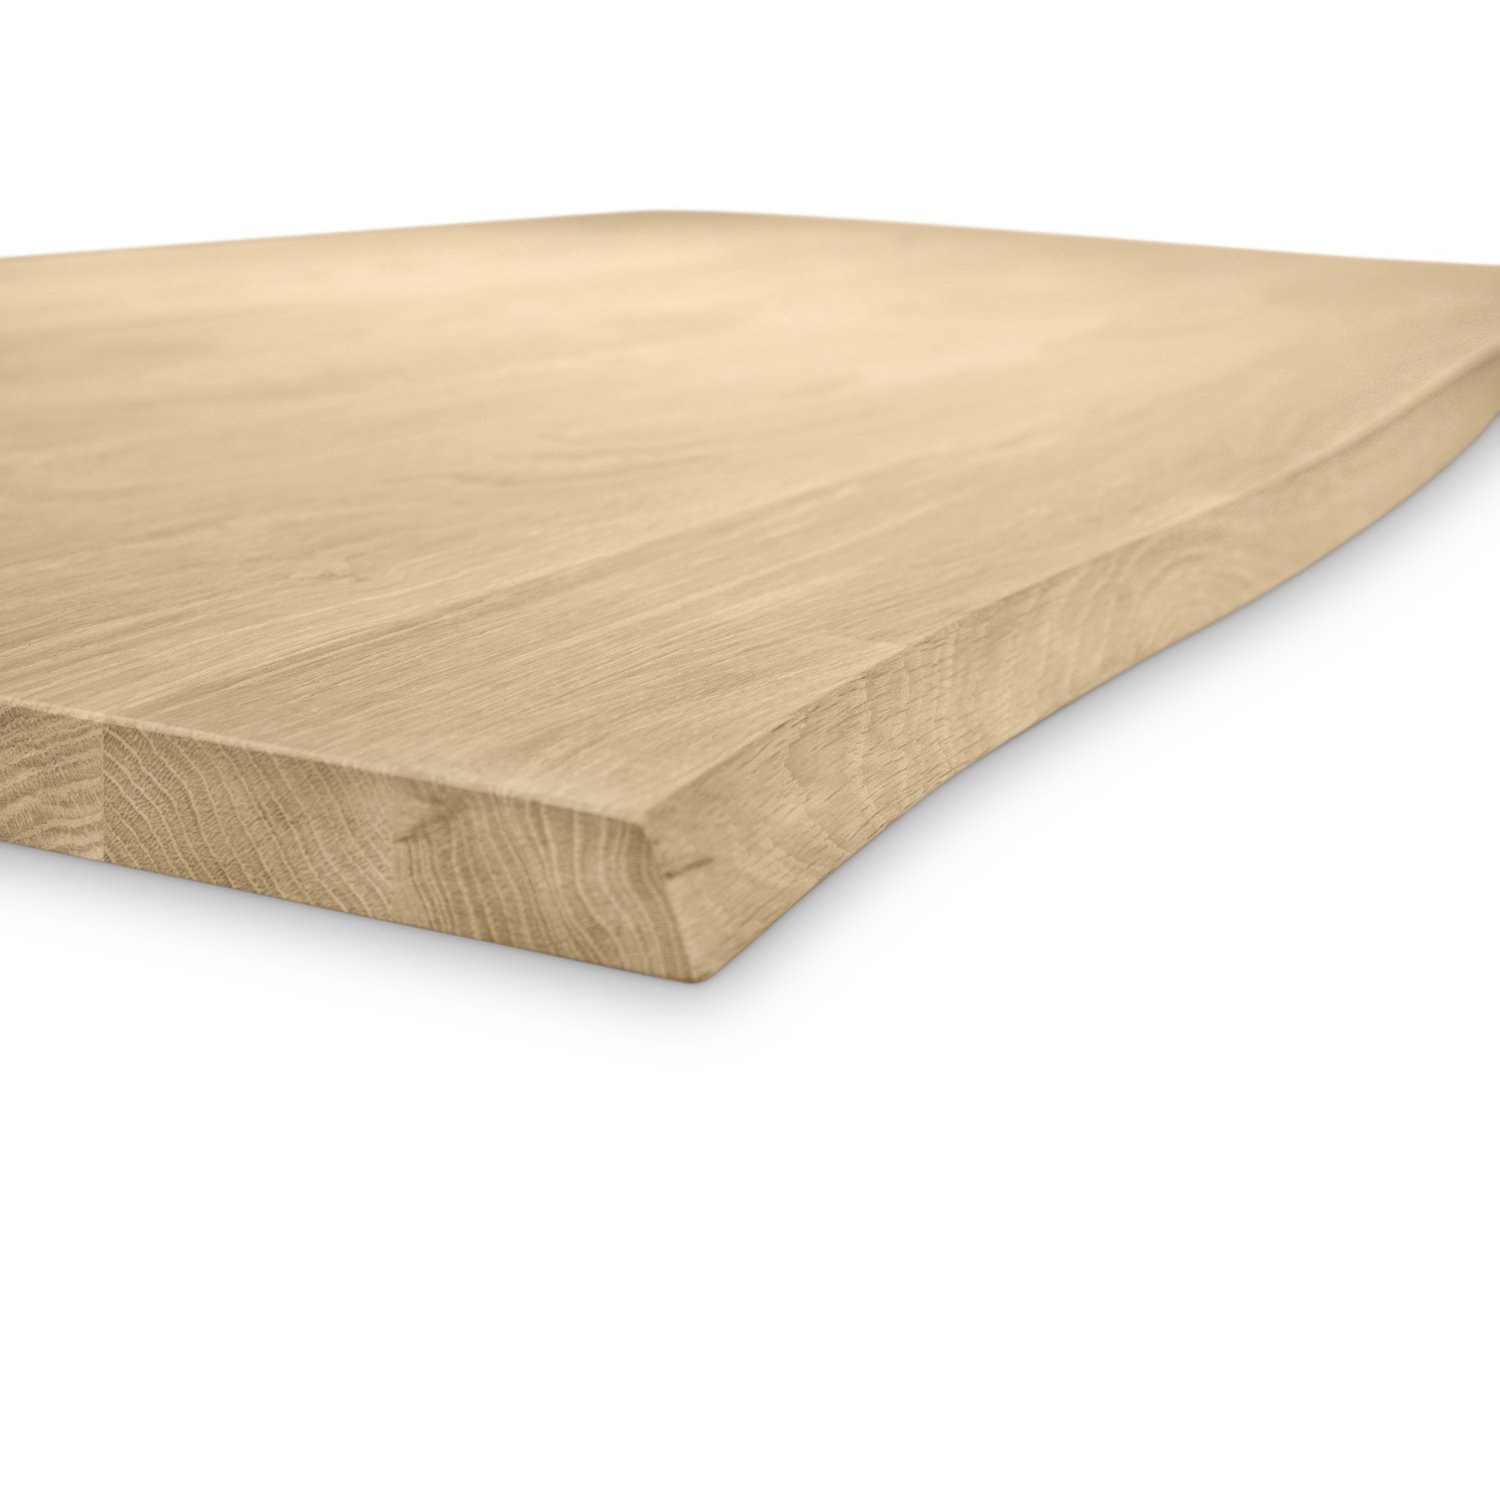  Eiken boomstam tafelblad - op maat - 3 cm dik (1-laag) - met boomstam rand / waankant LOOK - foutvrij Europees eikenhout - verlijmd kd 8-12% - 50-120x50-350 cm